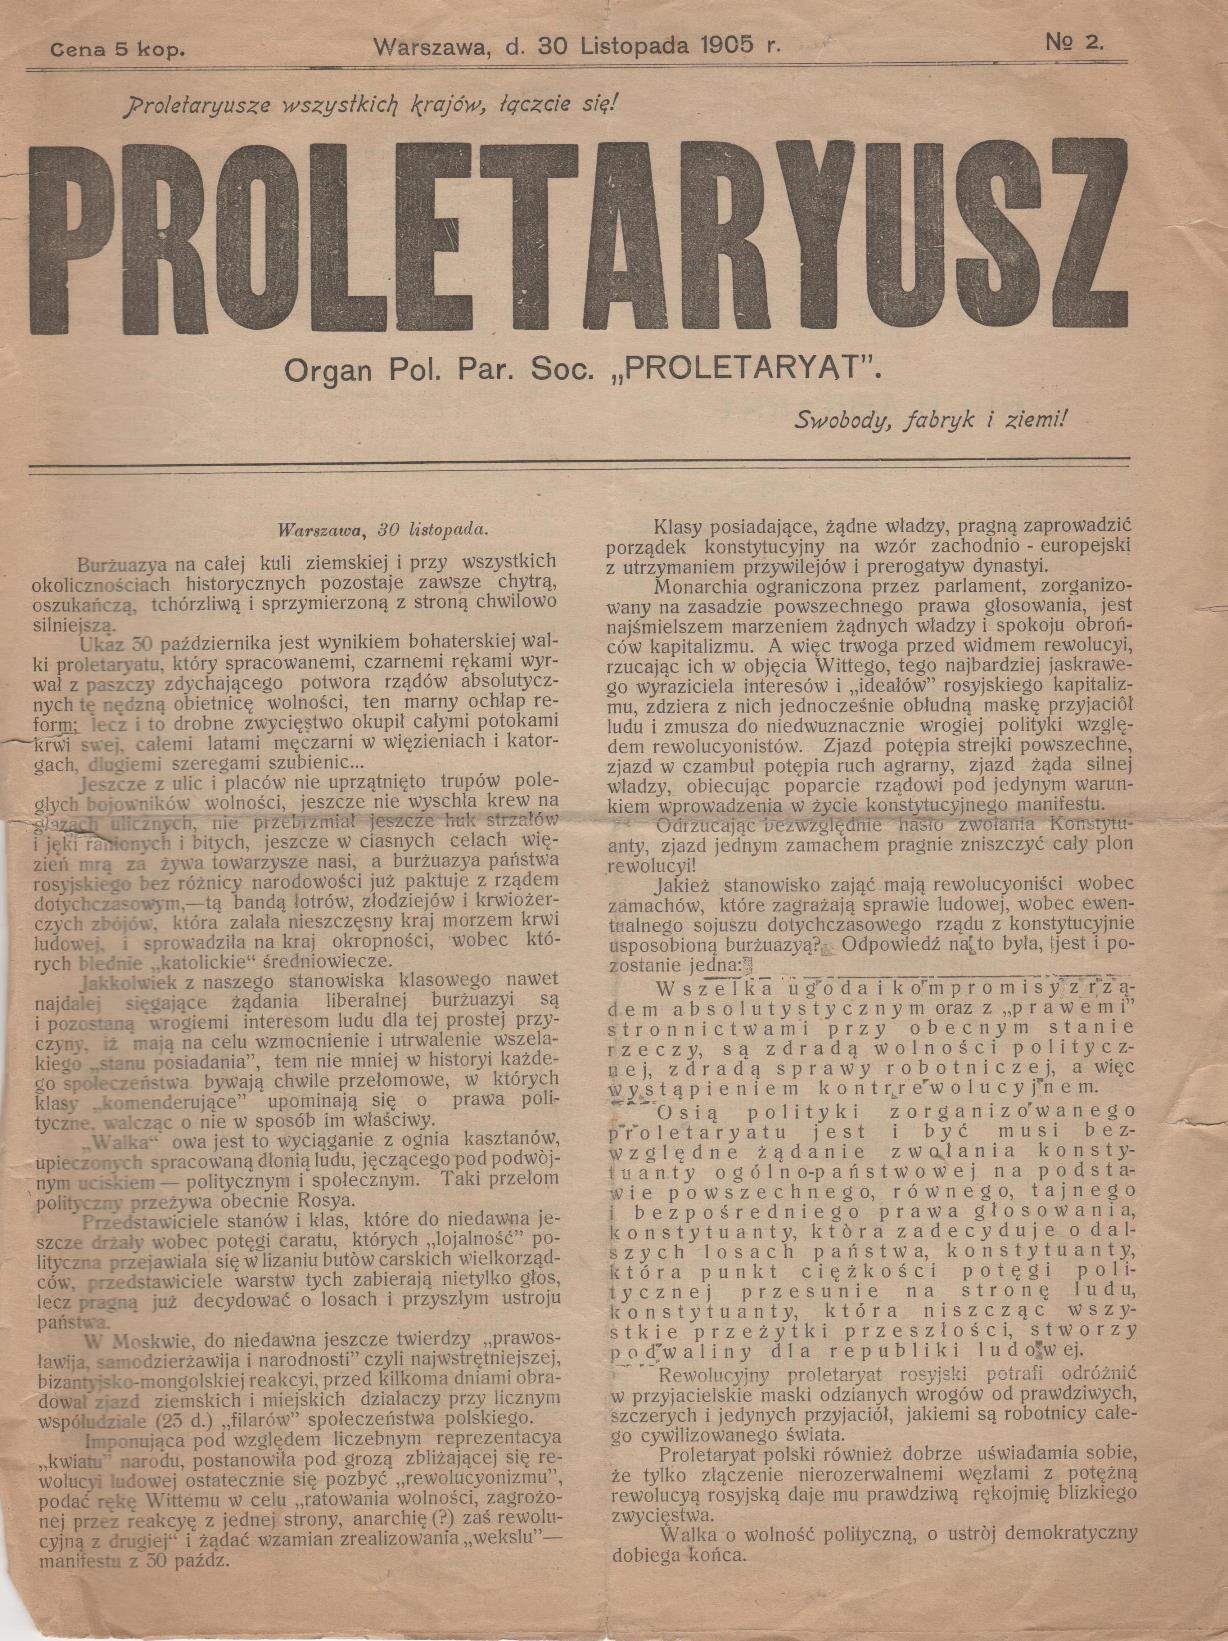 Газета "Proletaryusz" (у прекладі з польської "Пролетарський") № 2, 1905 р.